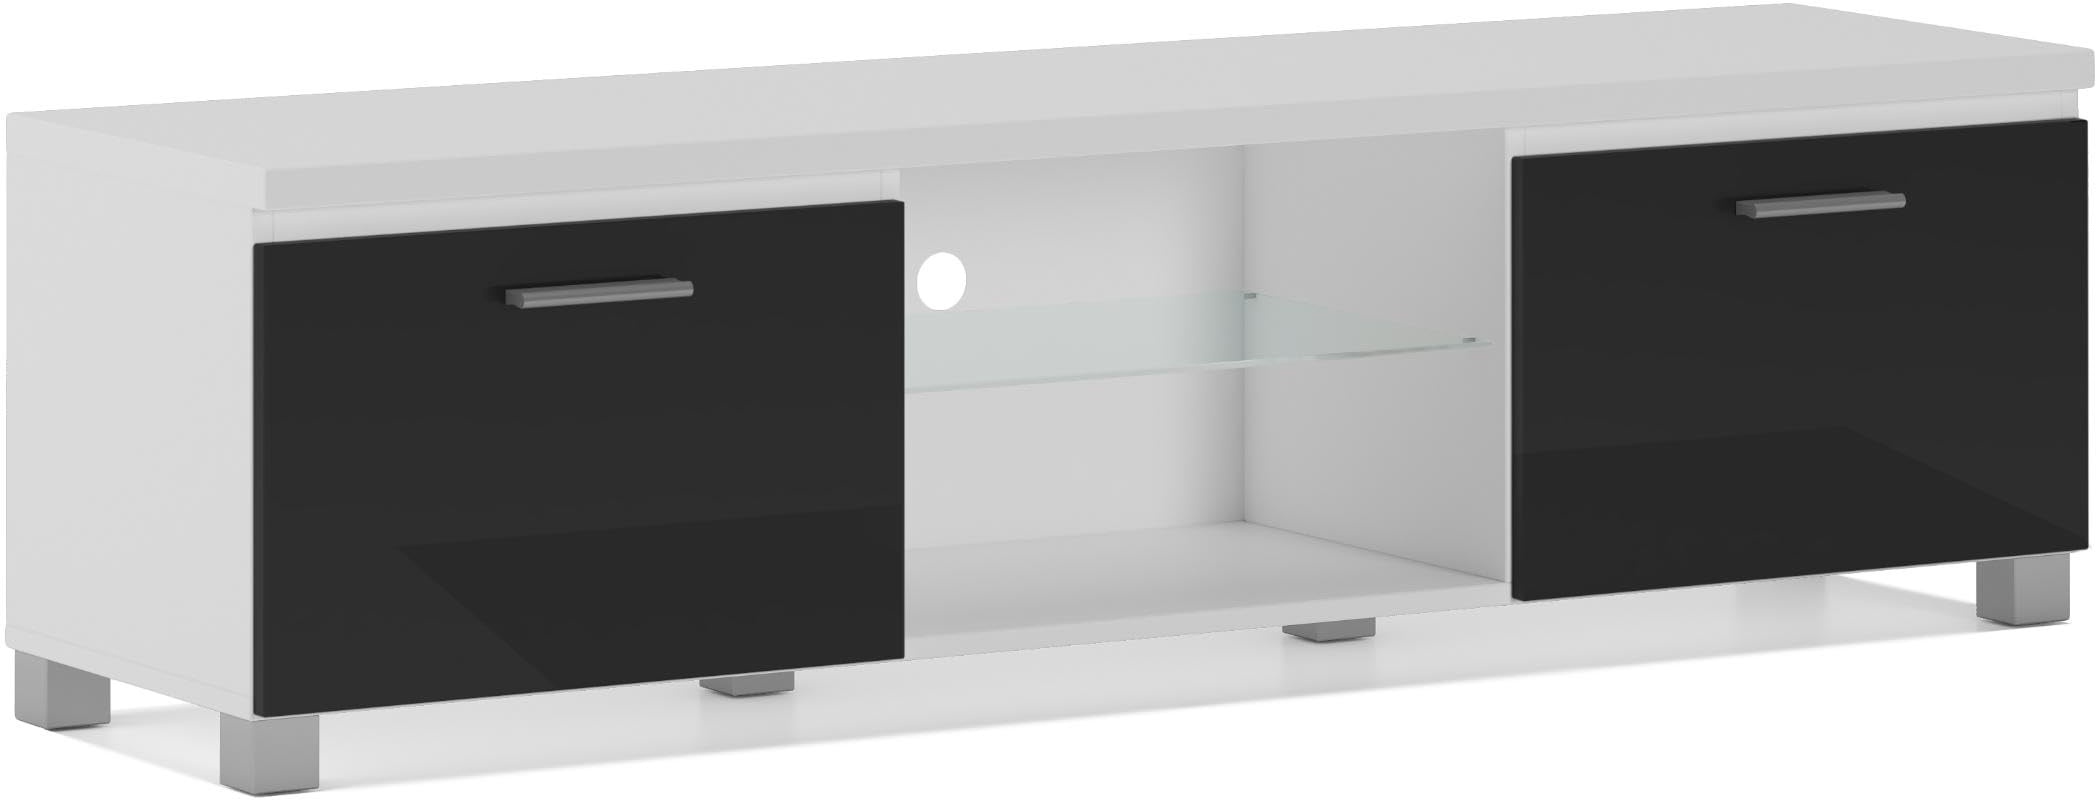 Skraut Home - Modularer TV-Schrank für Wohnzimmer - 42 x 150 x 40 cm - Integriertes LED-Beleuchtungssystem - Geeignet für 32/40/50/55/60/65" Fernseher - Tür mit Griff - Glasregal